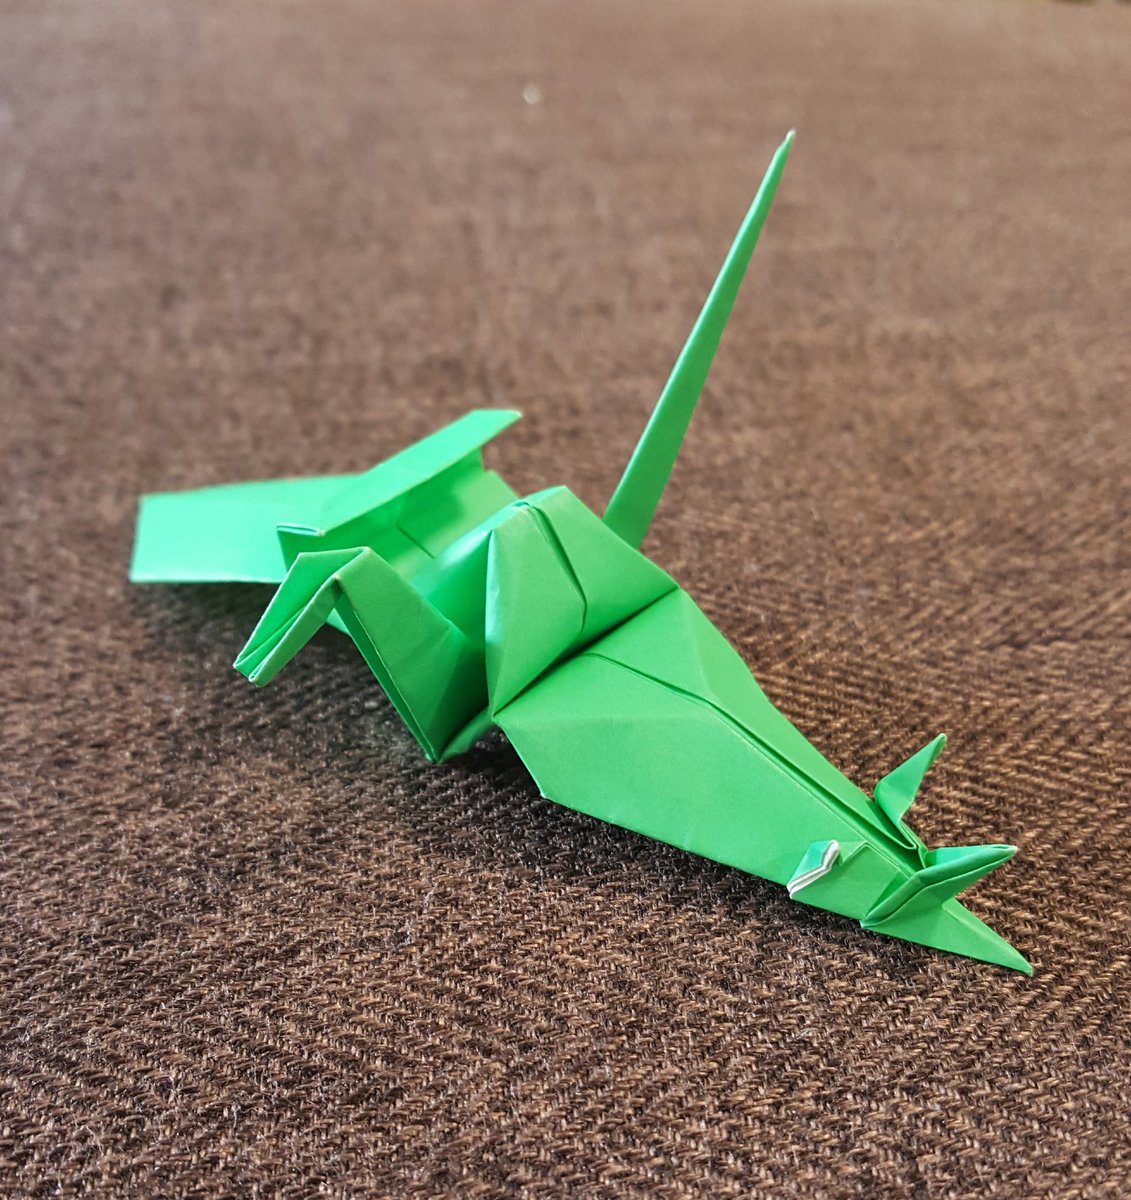 O Xrhsths Tatsumi Sto Twitter 有澤悠河さん Arisannoorigami が折り鶴のバリエーションを創作している事にインスパイアされて ザクっぽい折り鶴 を折りました 有澤さんの かどまつる の基本構造を参考にしています ガンダム好きのお見舞いには これの千羽鶴